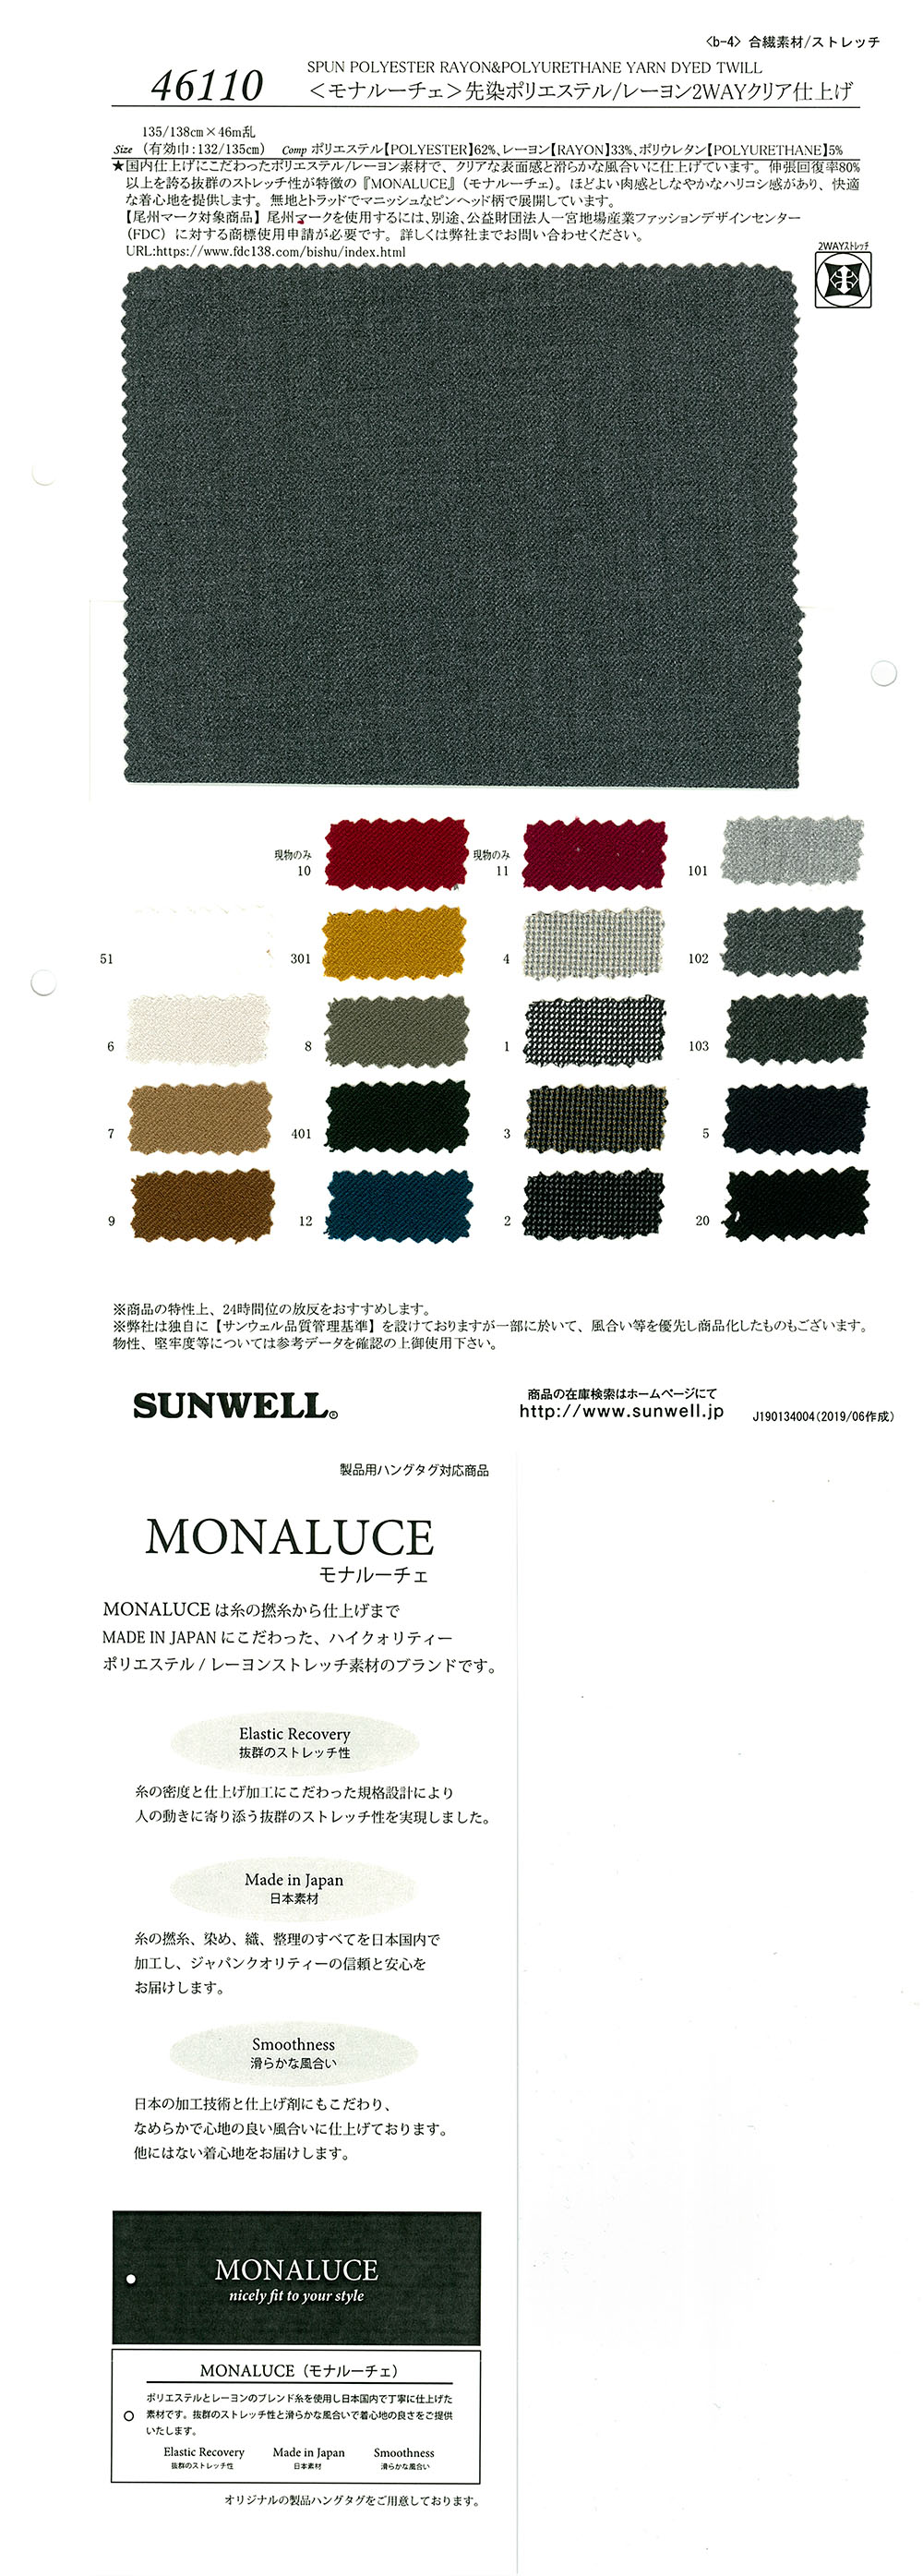 46110 <Monaluche> 色织聚酯纤维/人造丝 2 路透明精加工[面料] SUNWELL